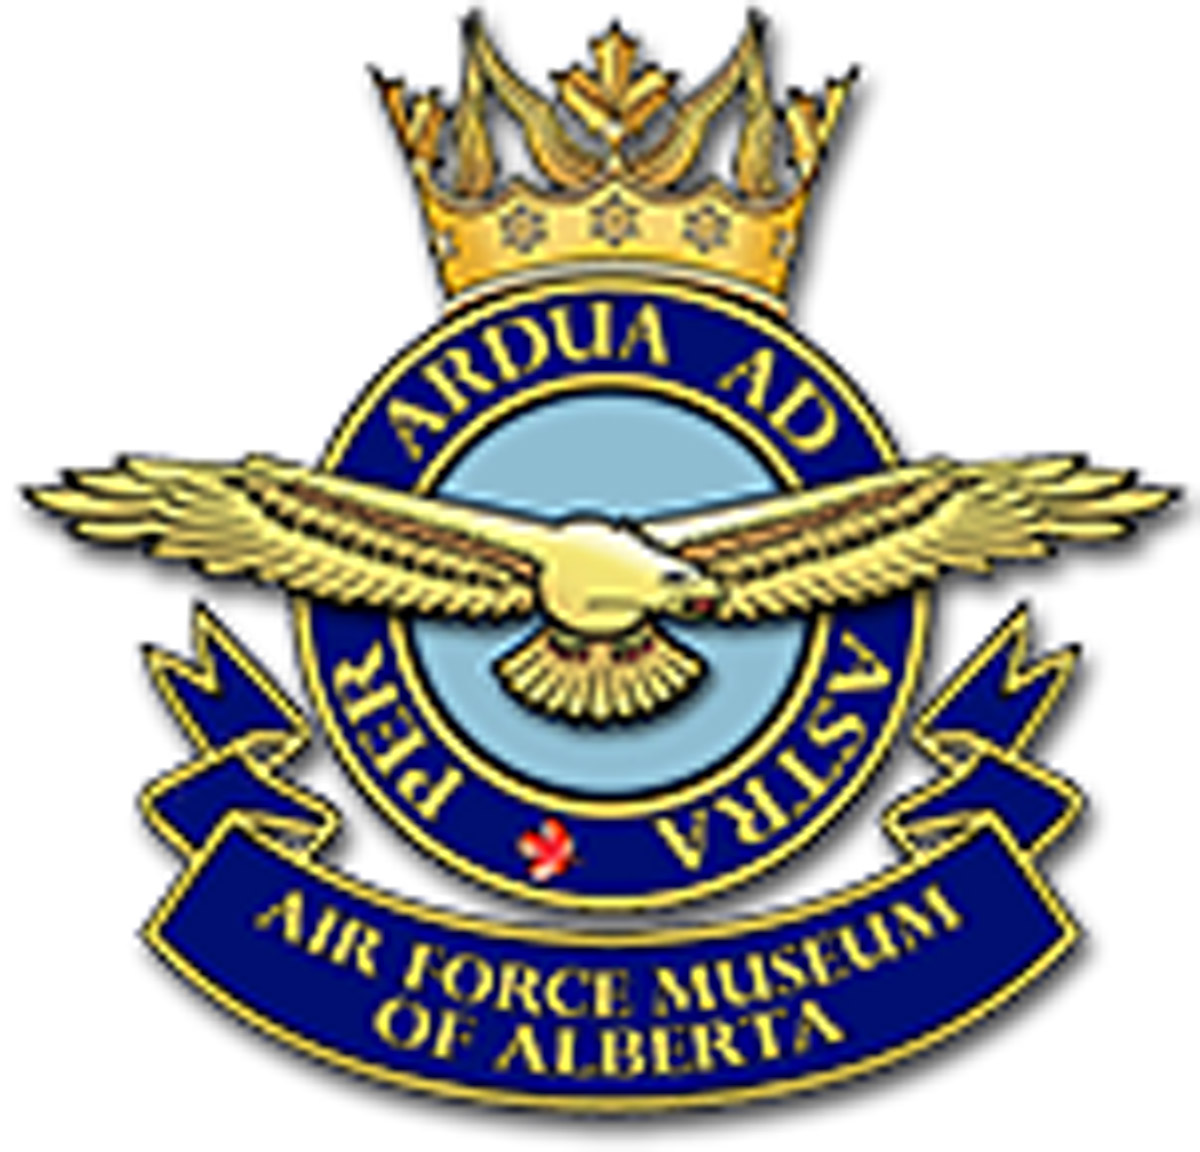 Air Force Museum of Alberta